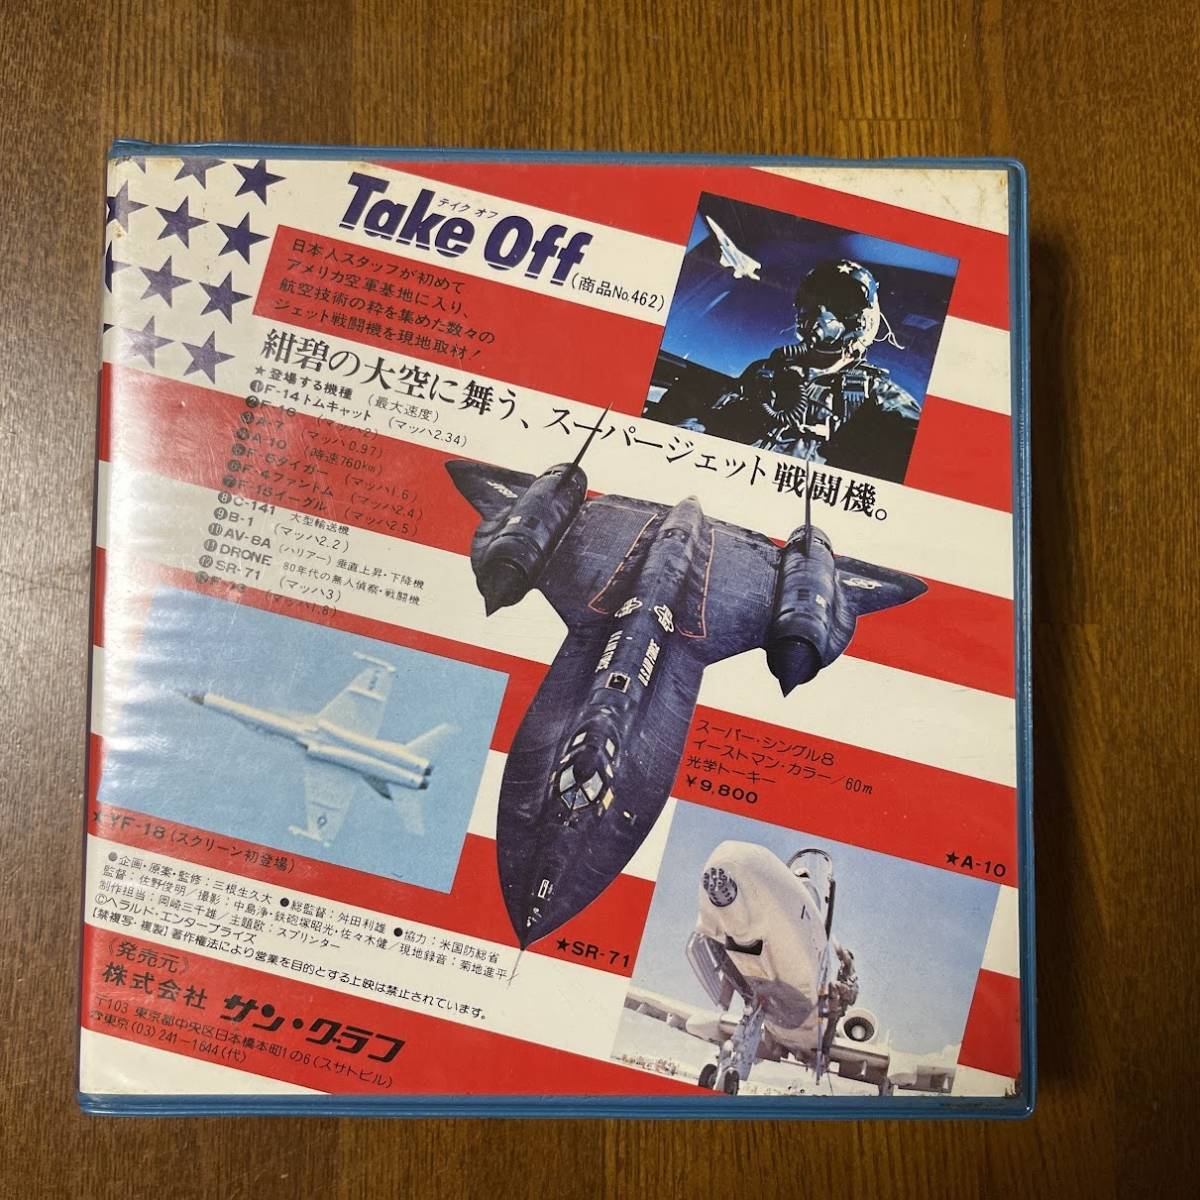 (AD) サン・グラフ ８ミリカラー映画「Take Off/テイクオフ」60min NO.462 9800円 USED 未検品Junk_画像2